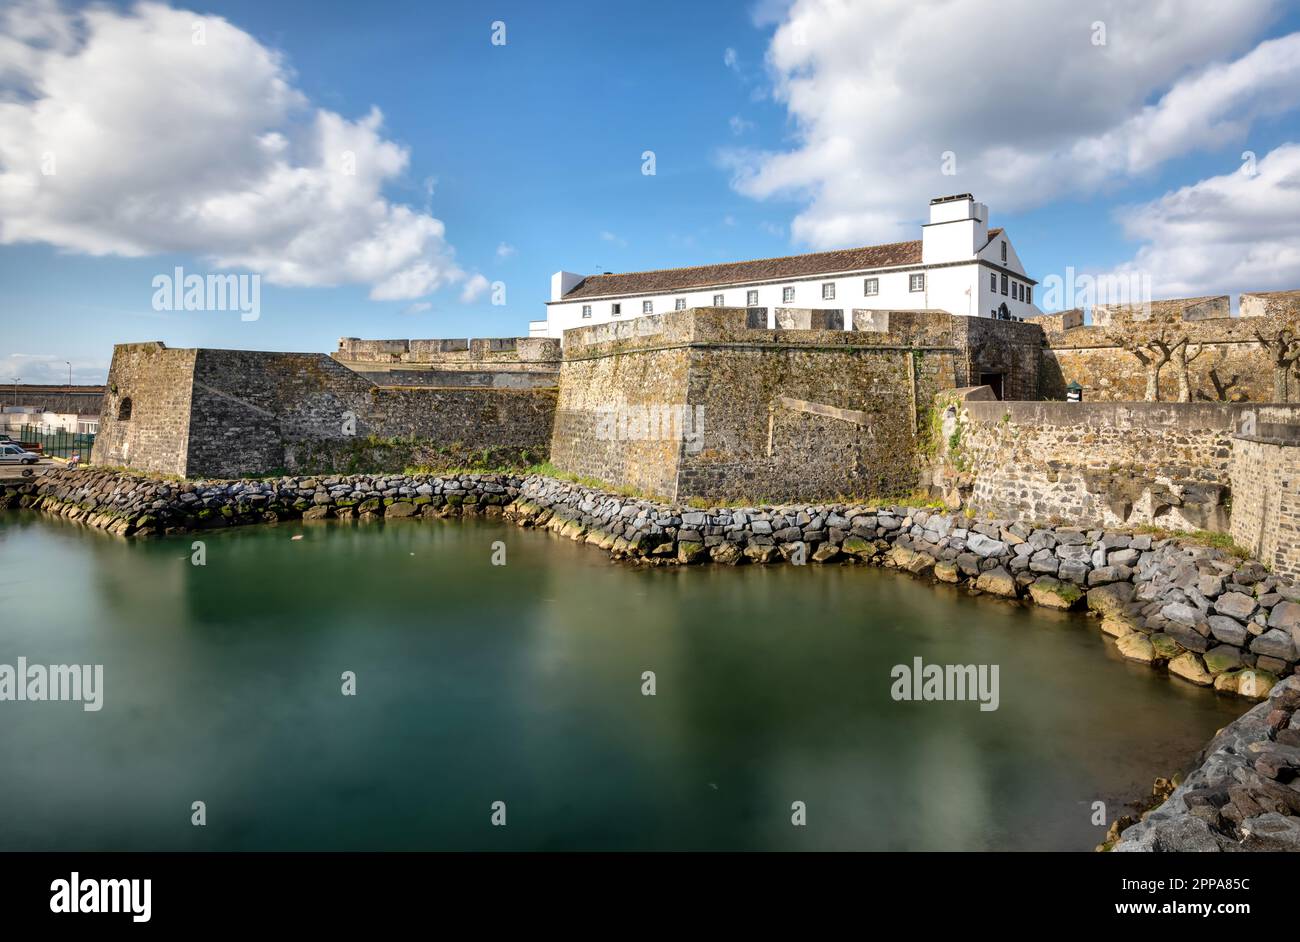 Forte de Sao bras - Forteresse Renaissance côtière datant de 1552 à Ponta Delgada, île de Sao Miguel, Açores Banque D'Images